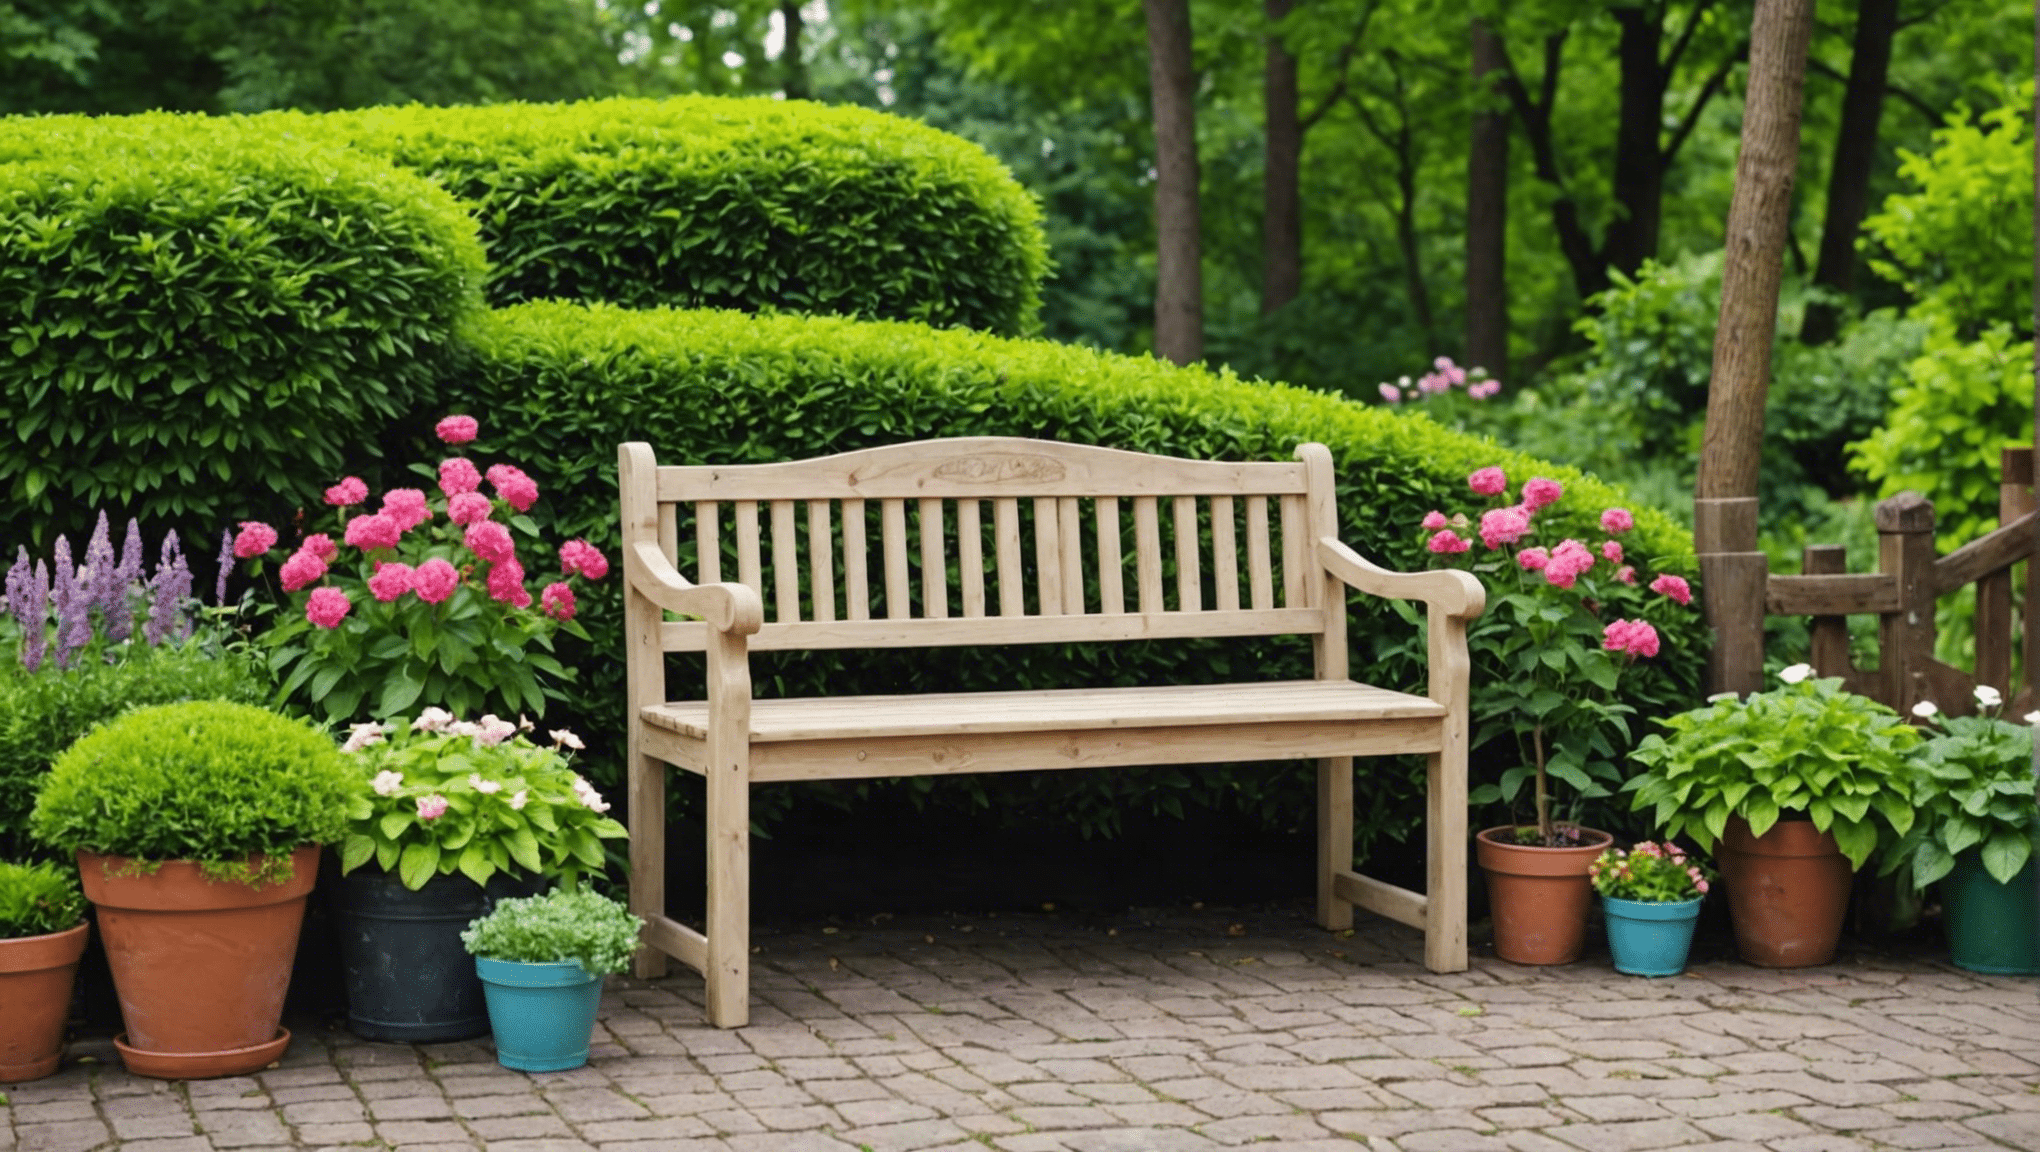 découvrez des idées de bancs de jardinage inspirants et fonctionnels pour apporter de la créativité à votre espace extérieur.